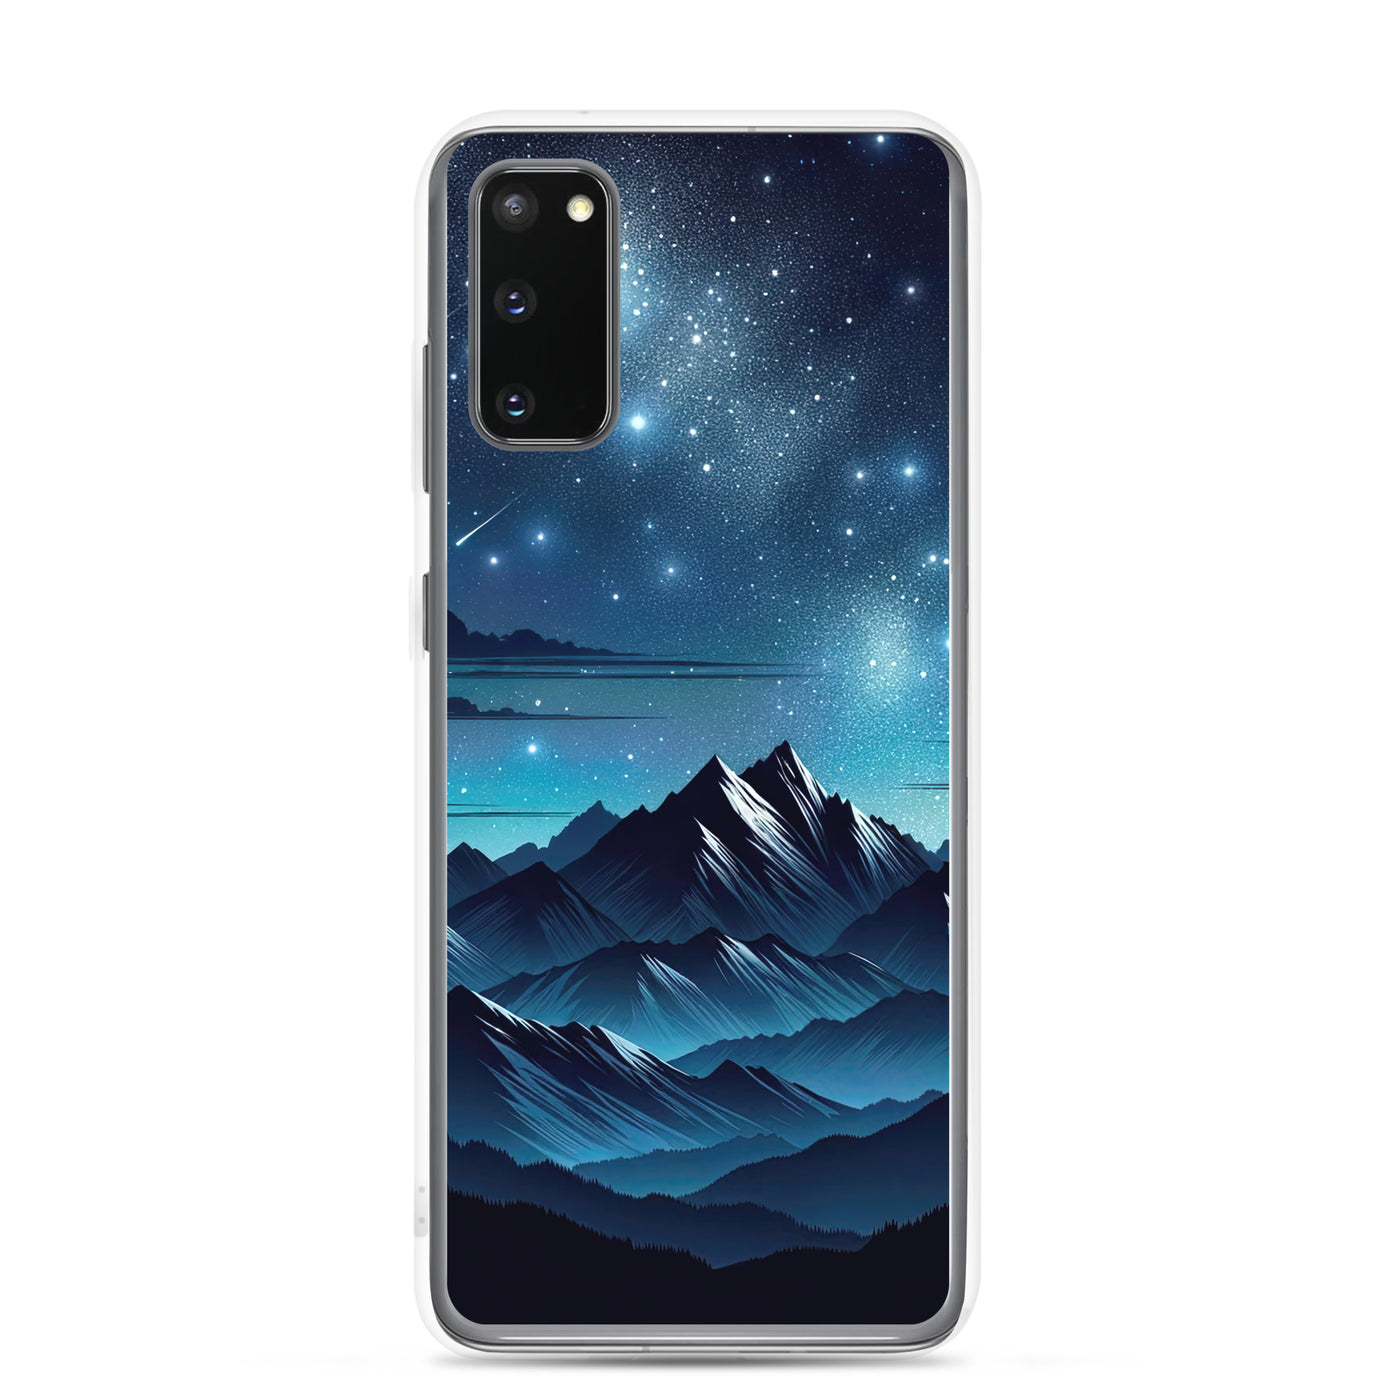 Alpen unter Sternenhimmel mit glitzernden Sternen und Meteoren - Samsung Schutzhülle (durchsichtig) berge xxx yyy zzz Samsung Galaxy S20